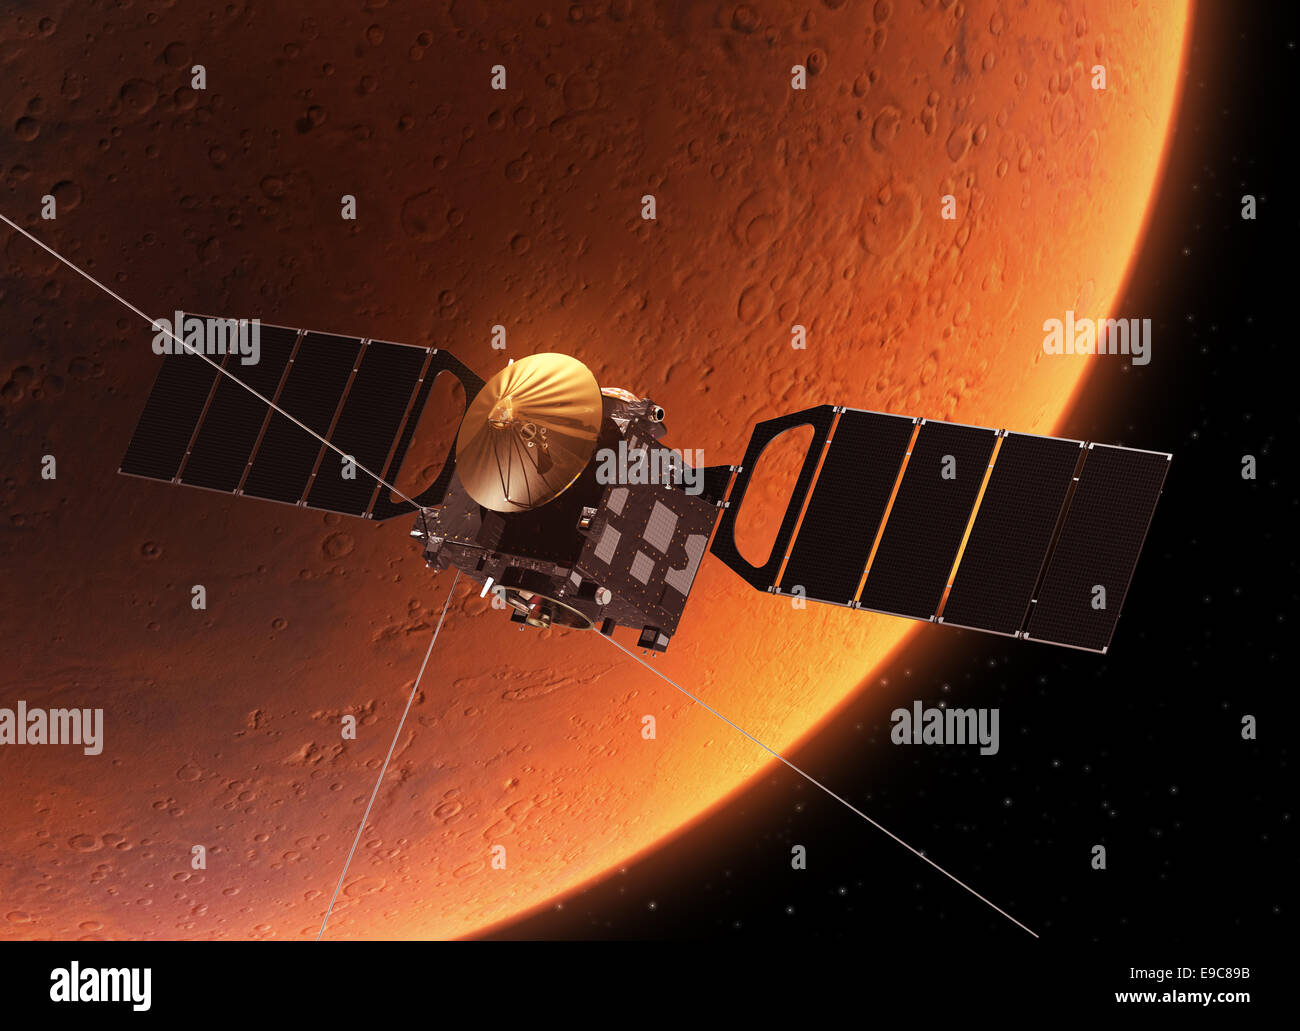 Veicolo spaziale in orbita attorno a Marte. Realistiche scene 3D. Foto Stock